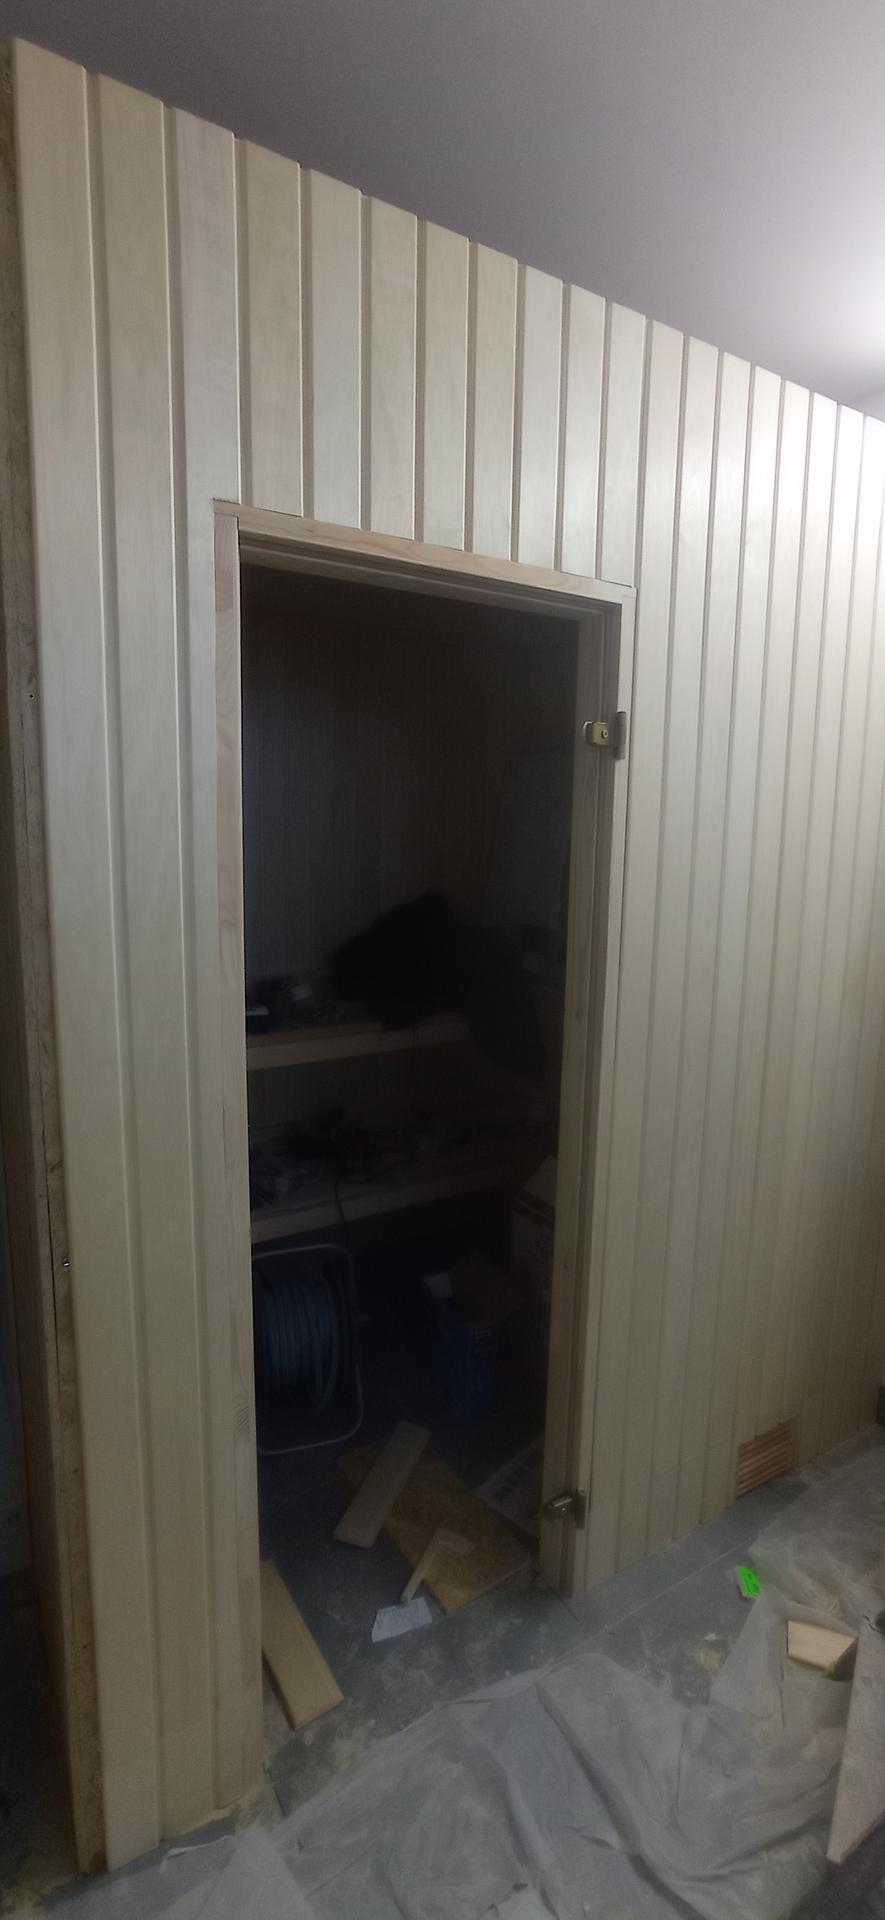 Budování sauny v garáži - Obrázek č. 26